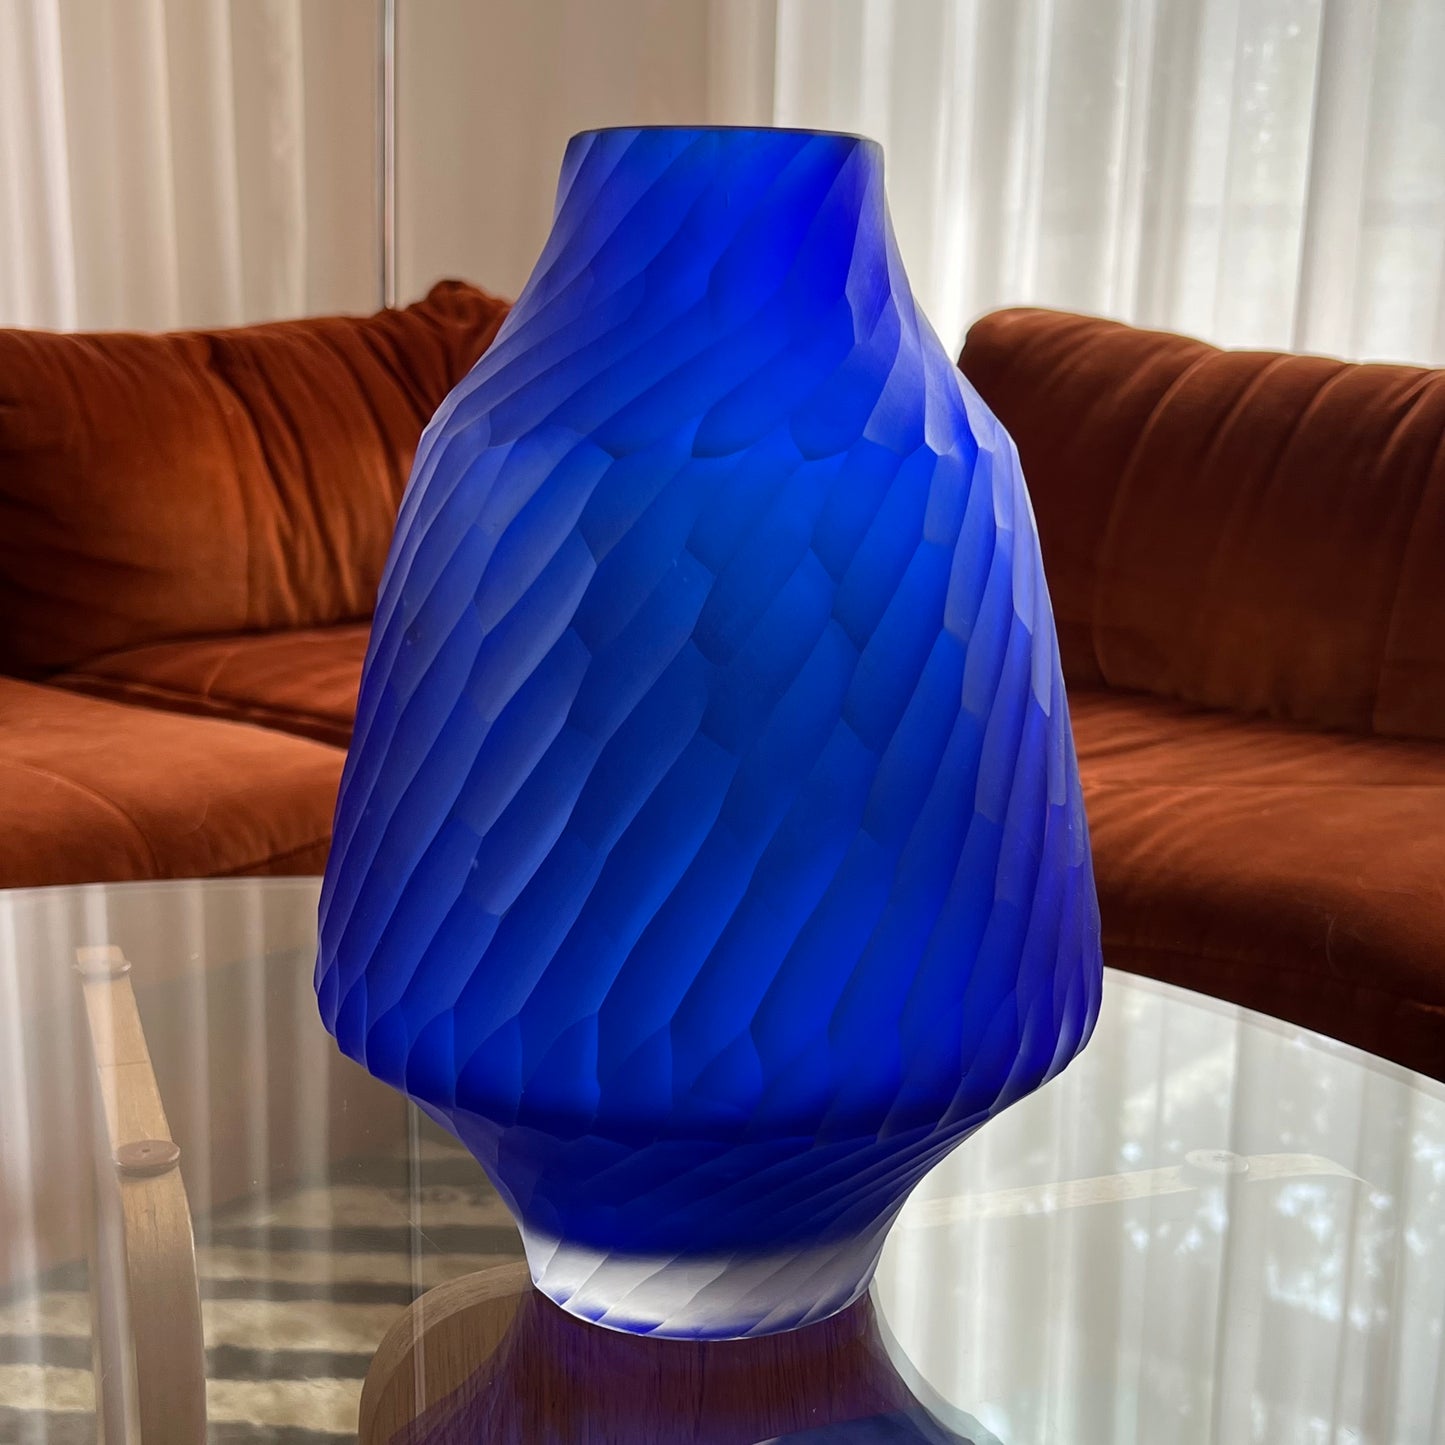 Cobalt Blue Glass Vase